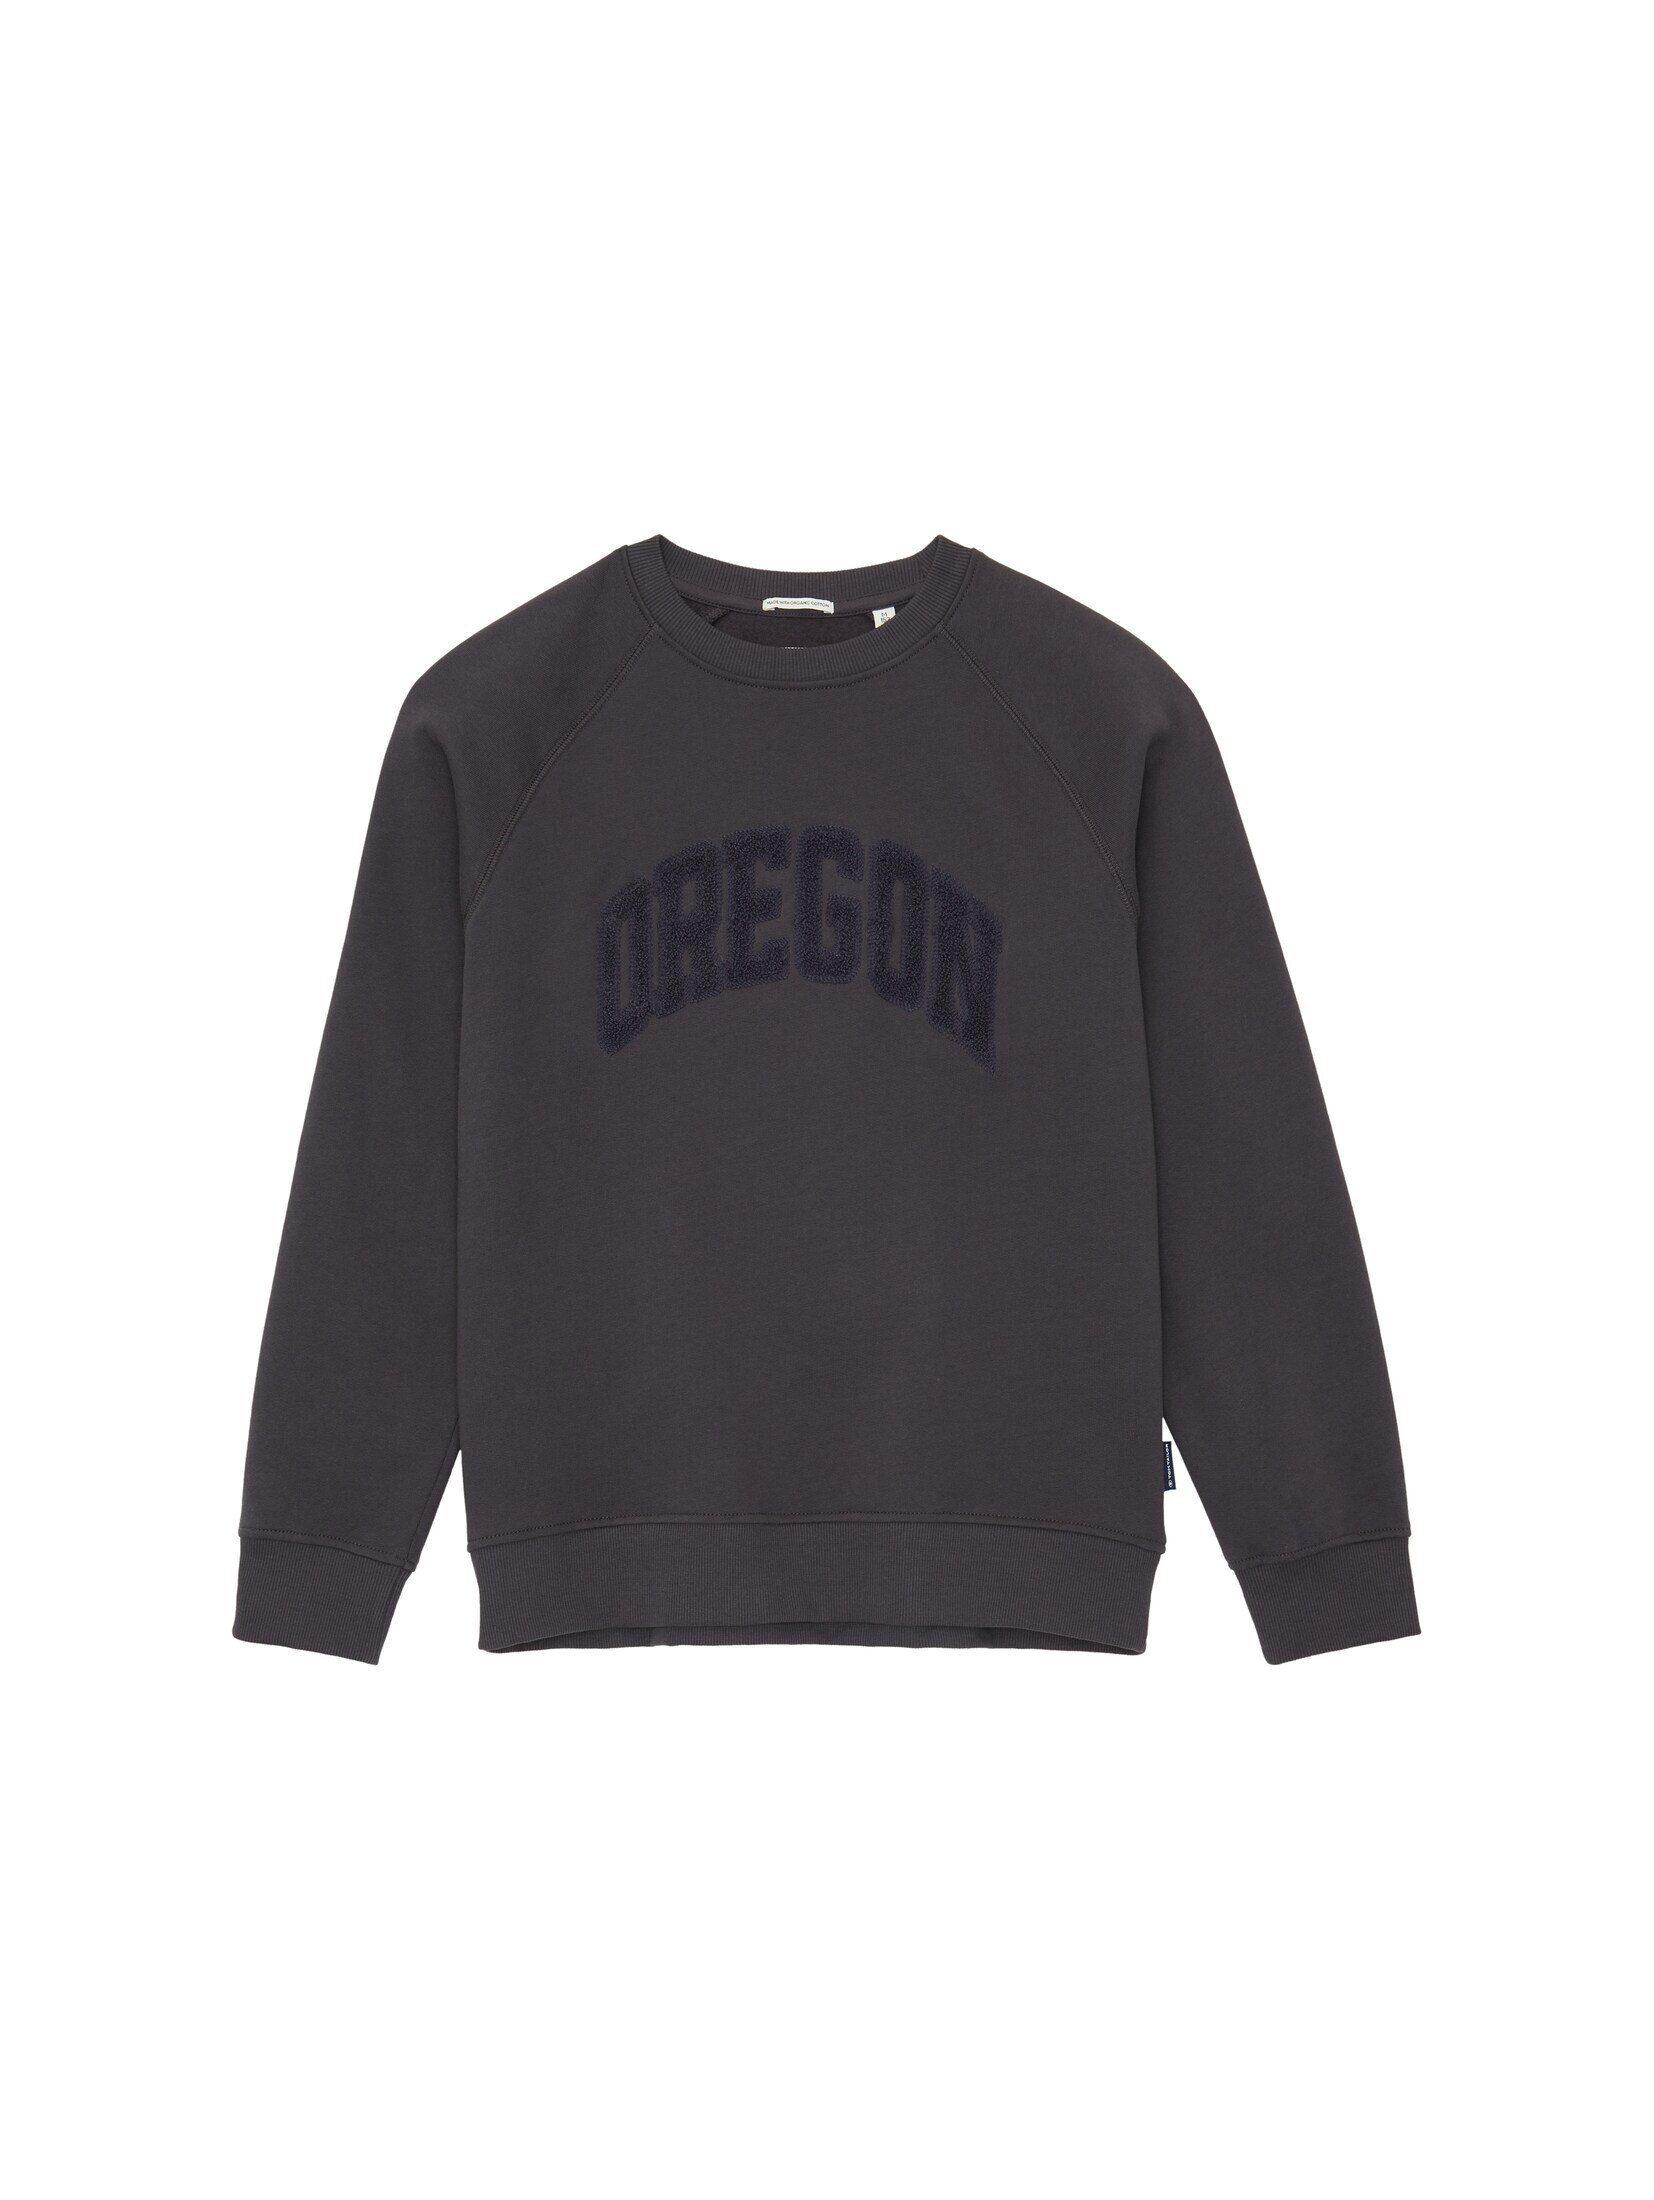 TOM TAILOR Hoodie Oversized Sweatshirt mit Print coal grey